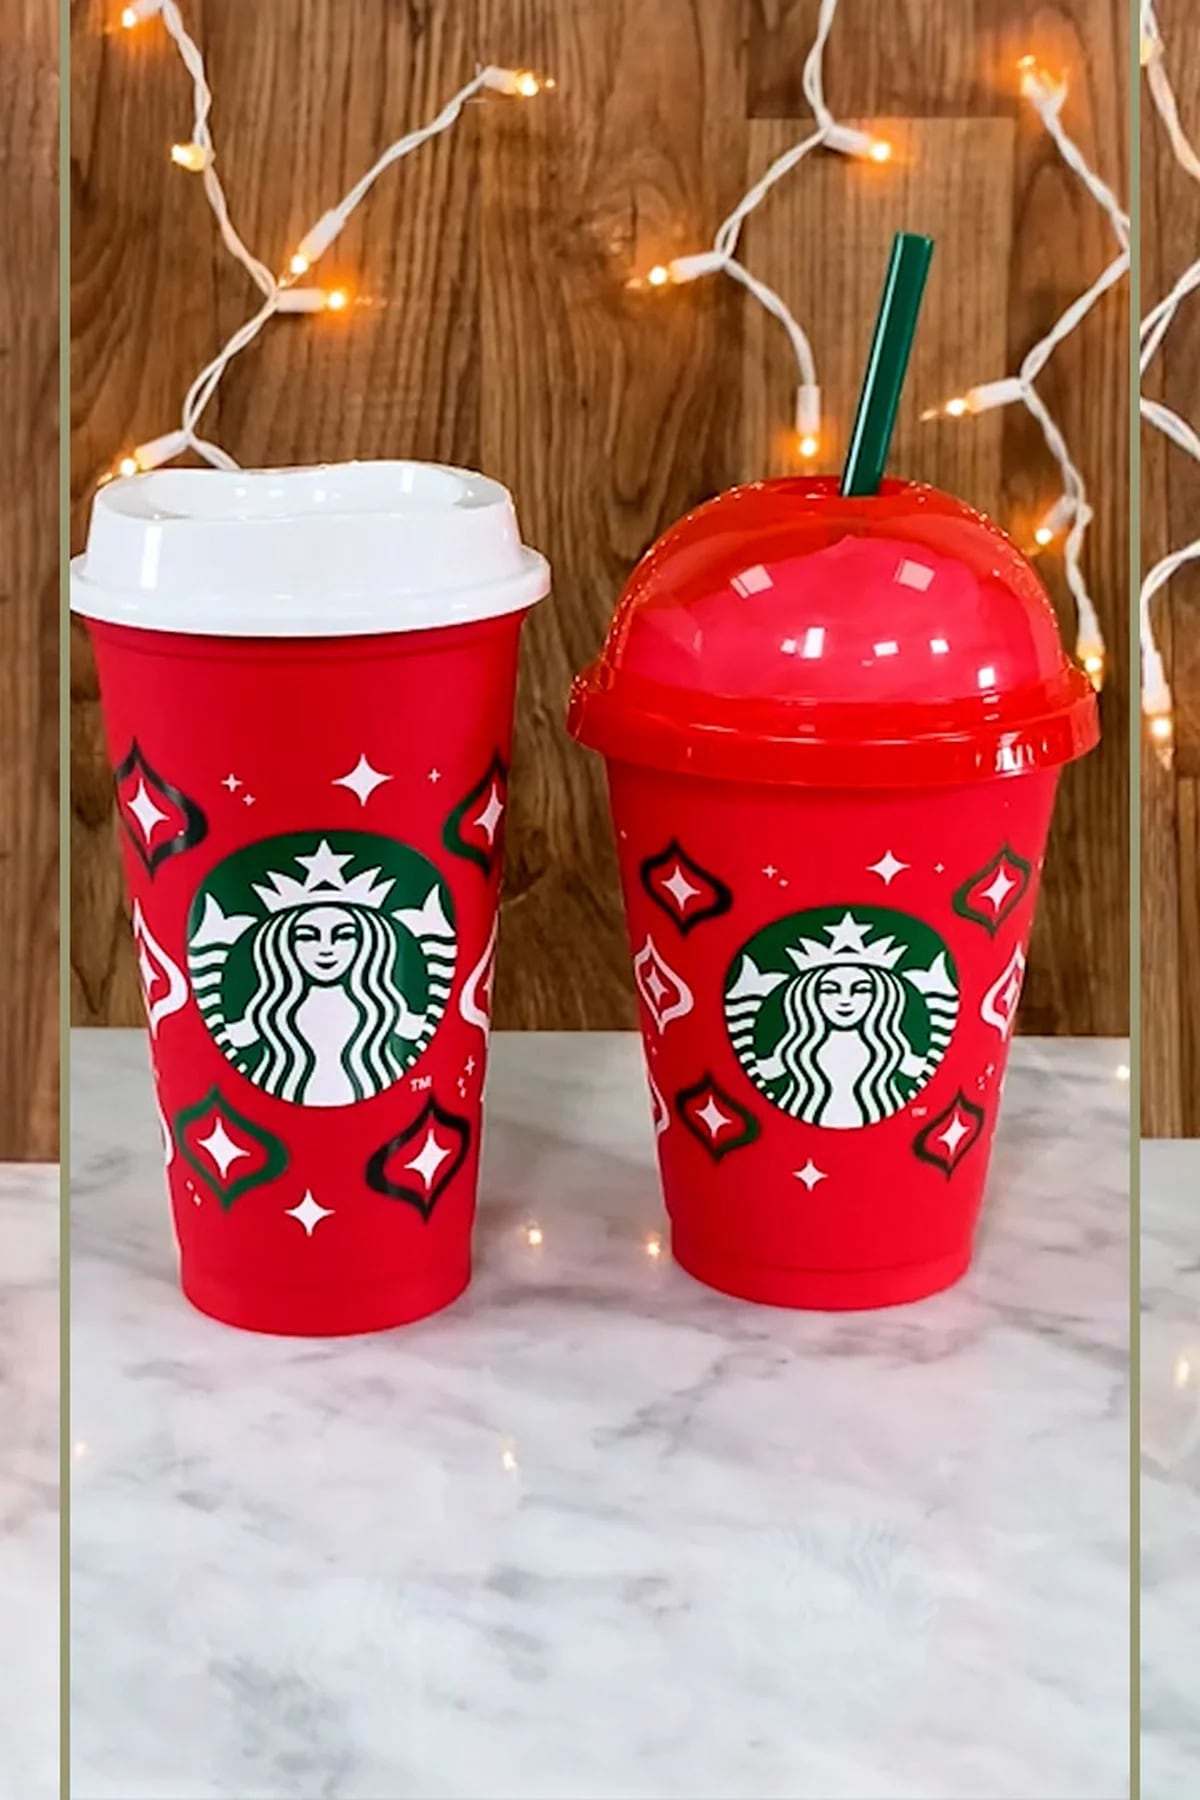 Starbucks regalará estos vasos rojos navideños reusables el 10 de noviembre  - Revista Merca2.0